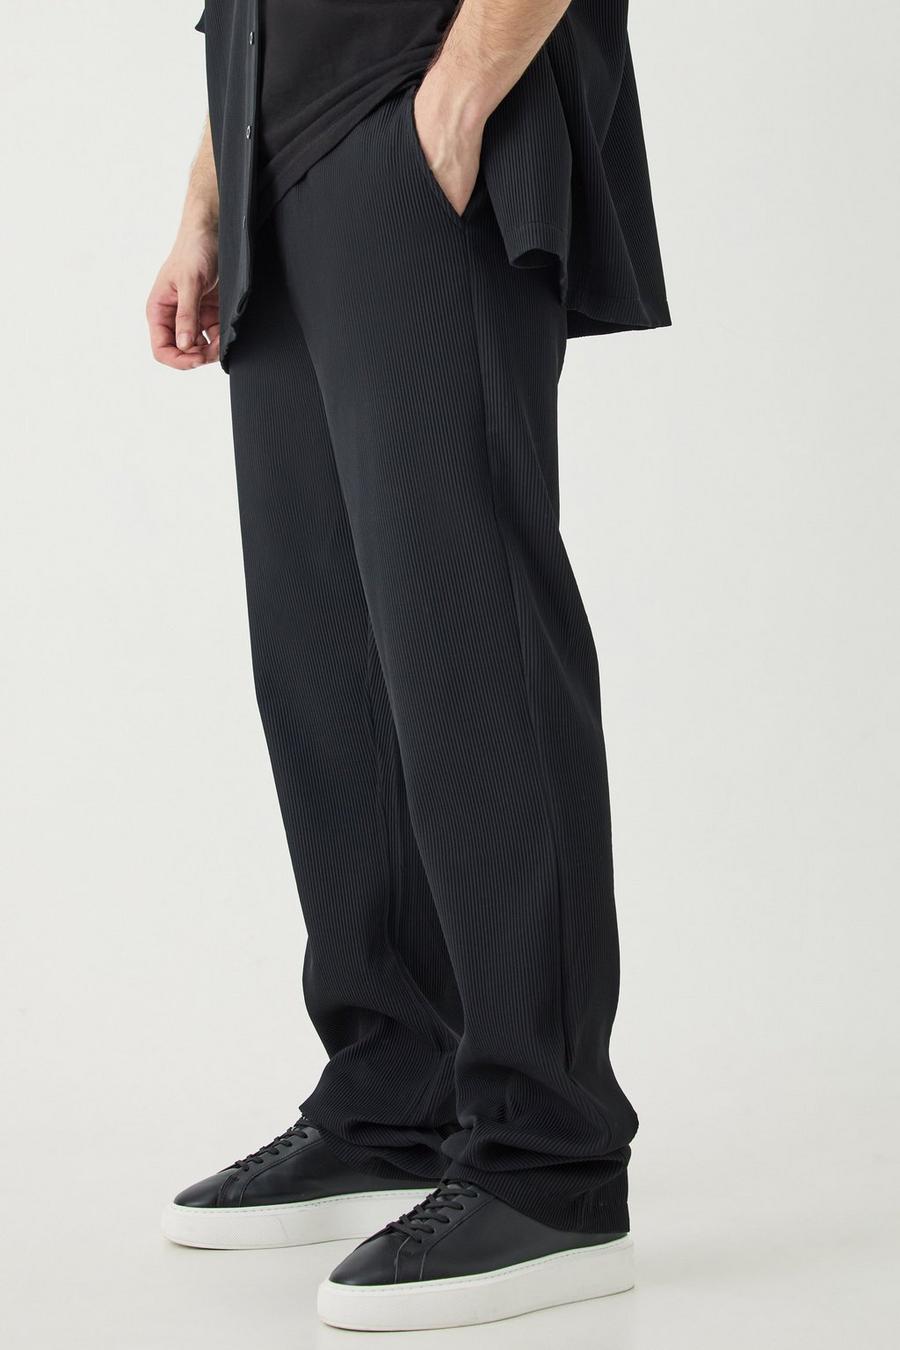 Pantalón Tall plisado ajustado de campana con cintura elástica, Black